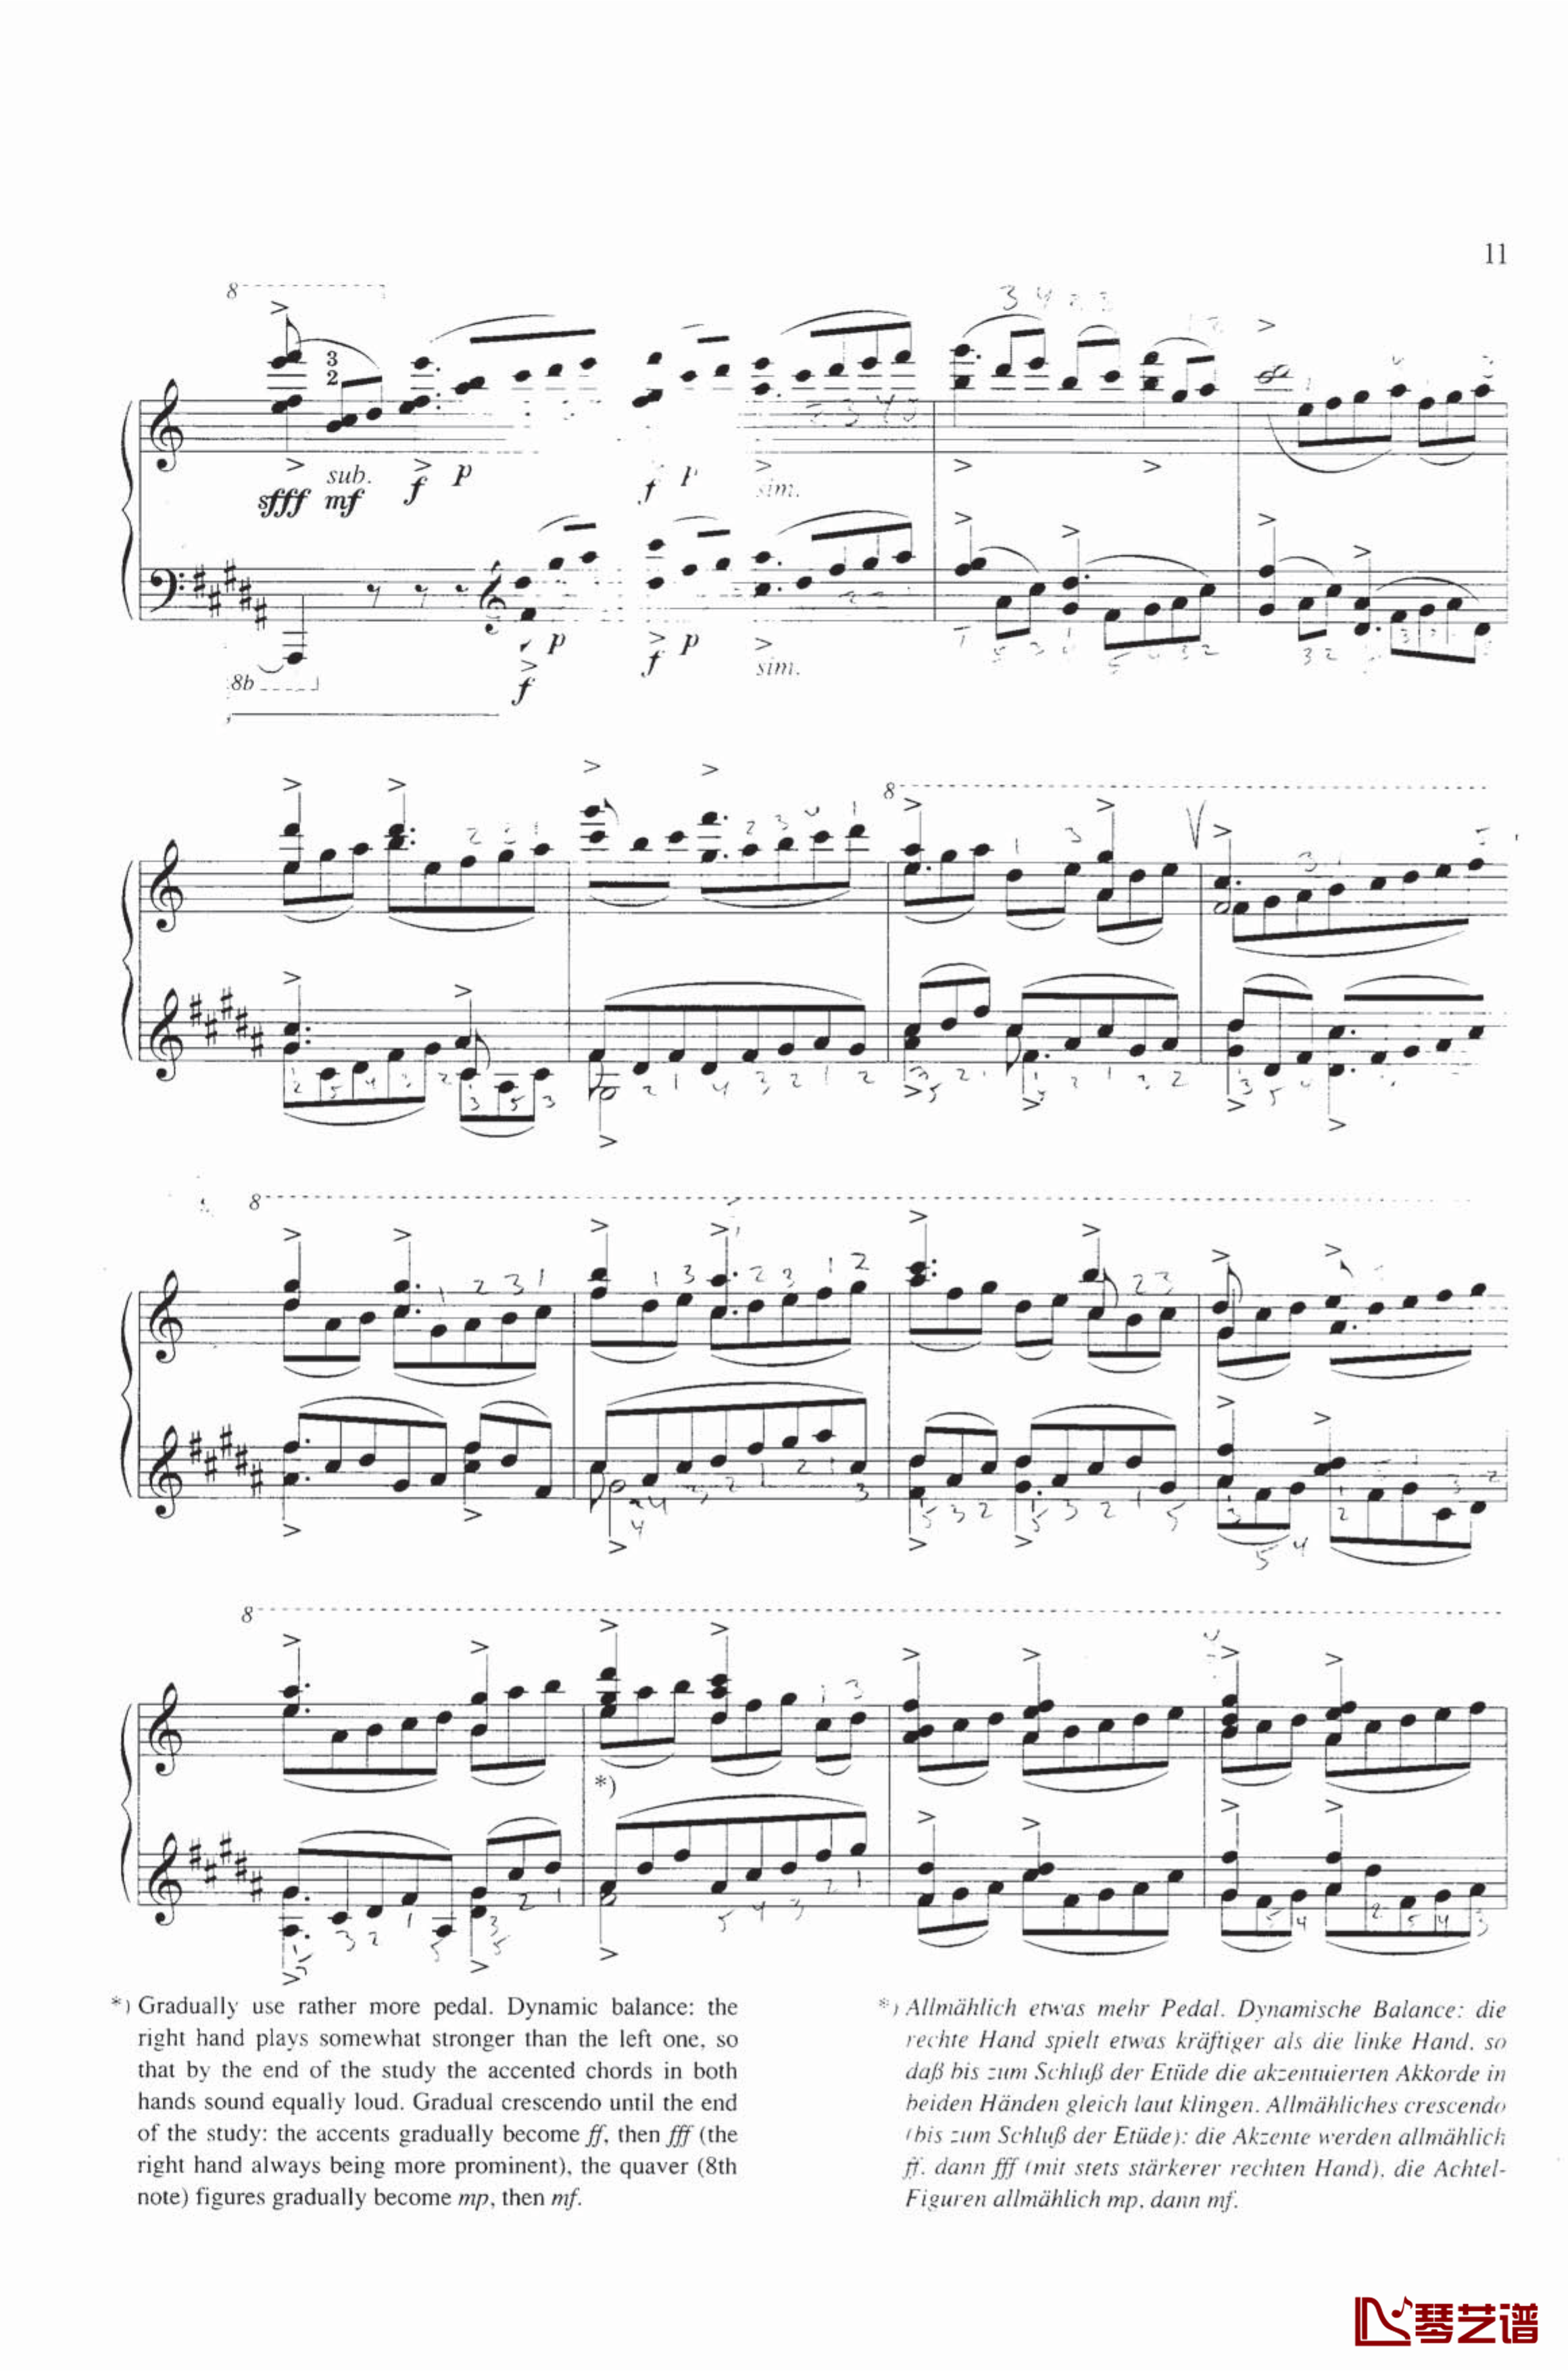 钢琴练习曲NO.1钢琴谱-里盖蒂